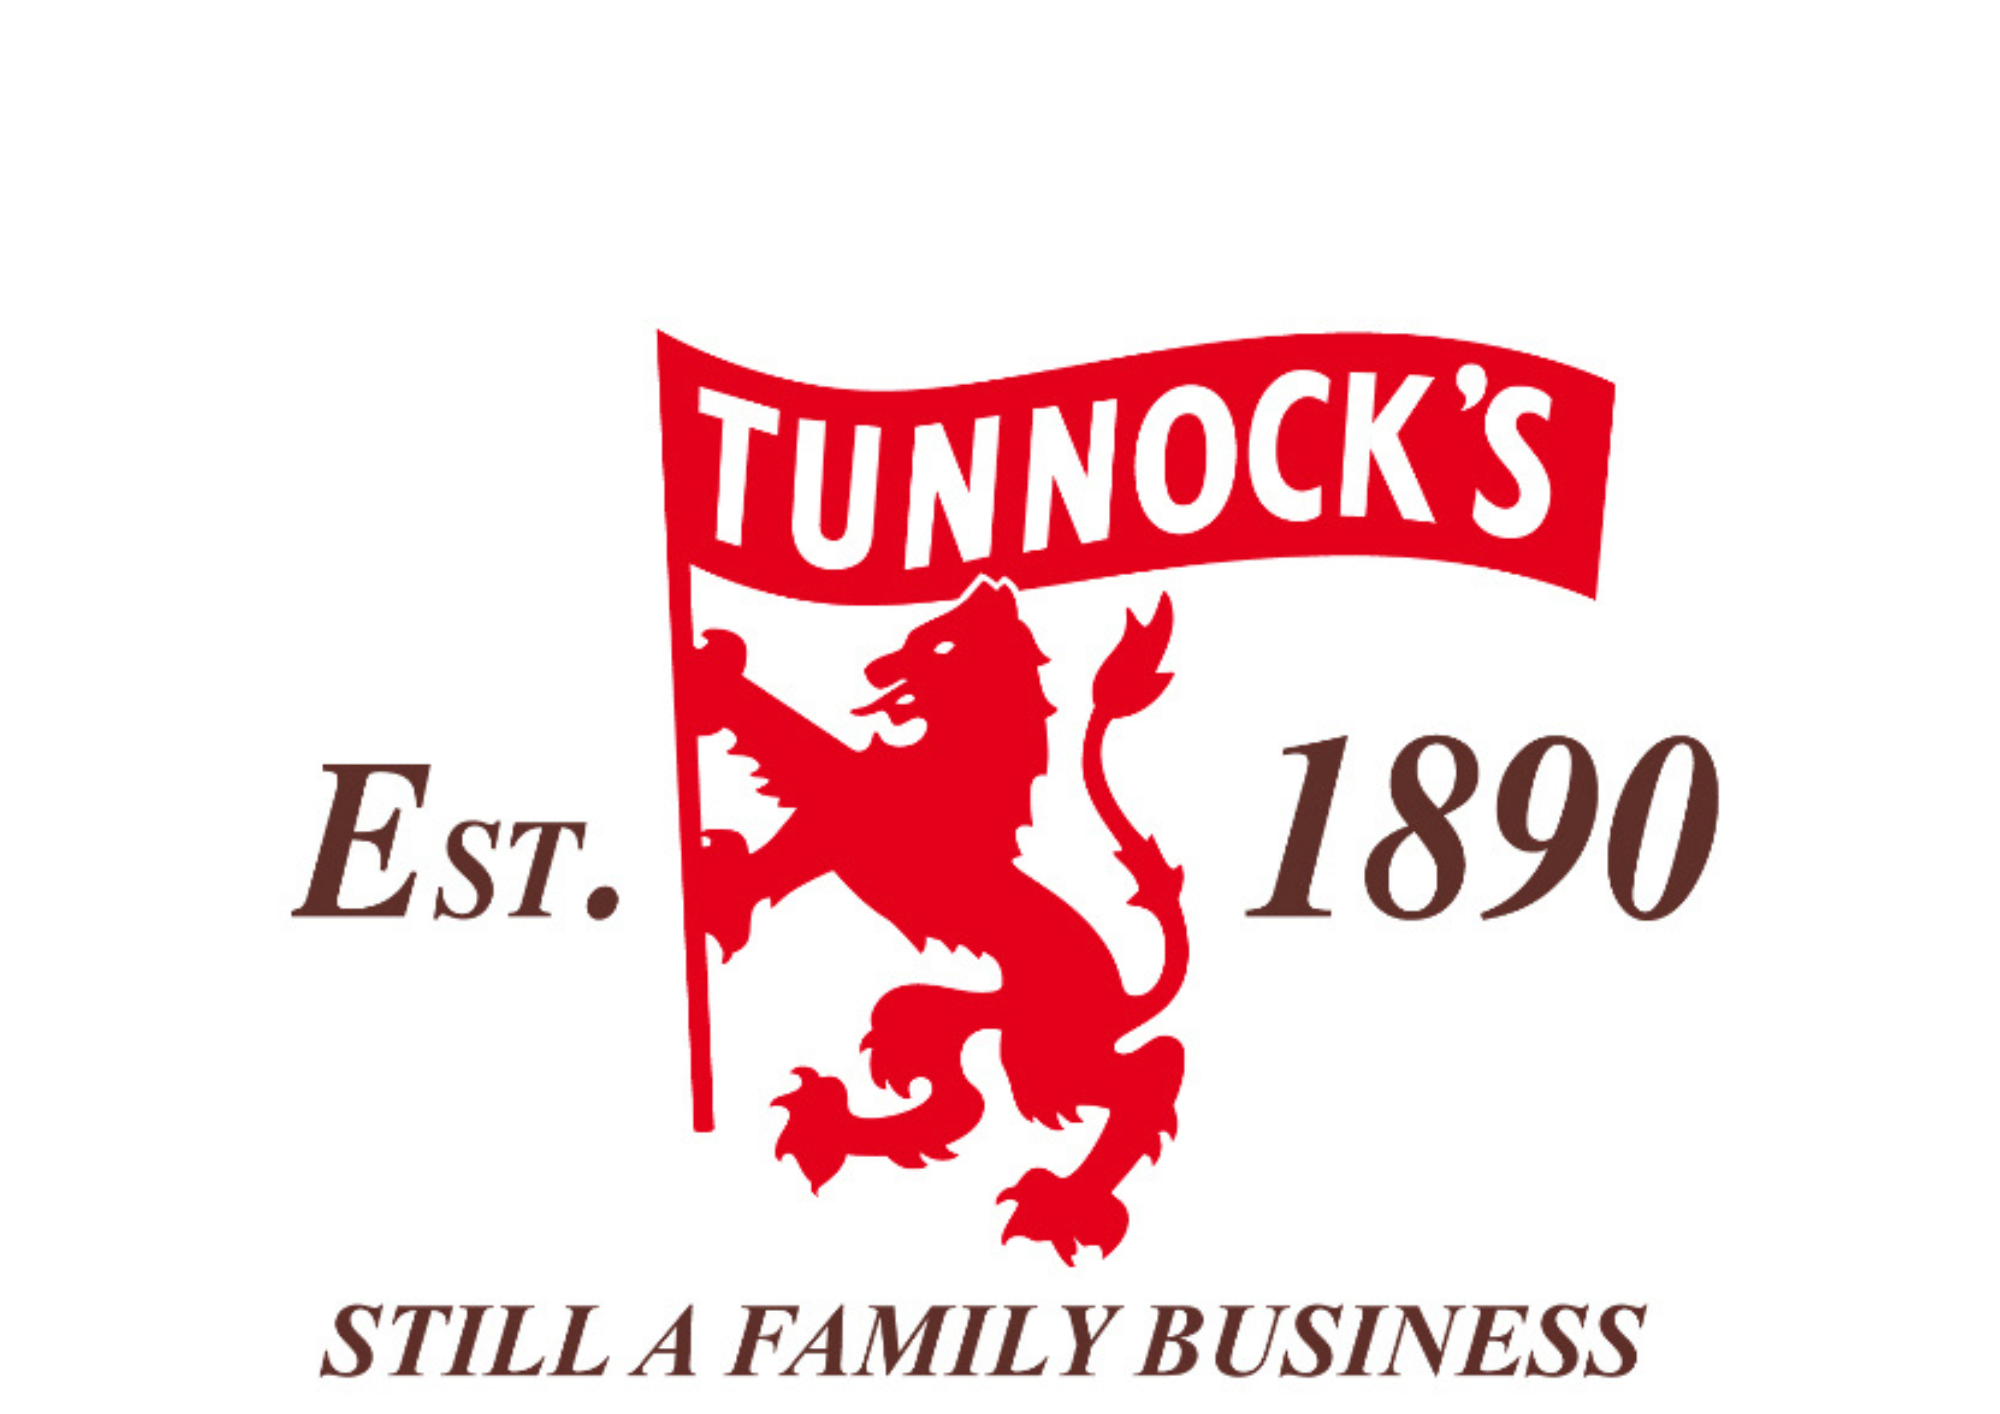 Tunnock's logo